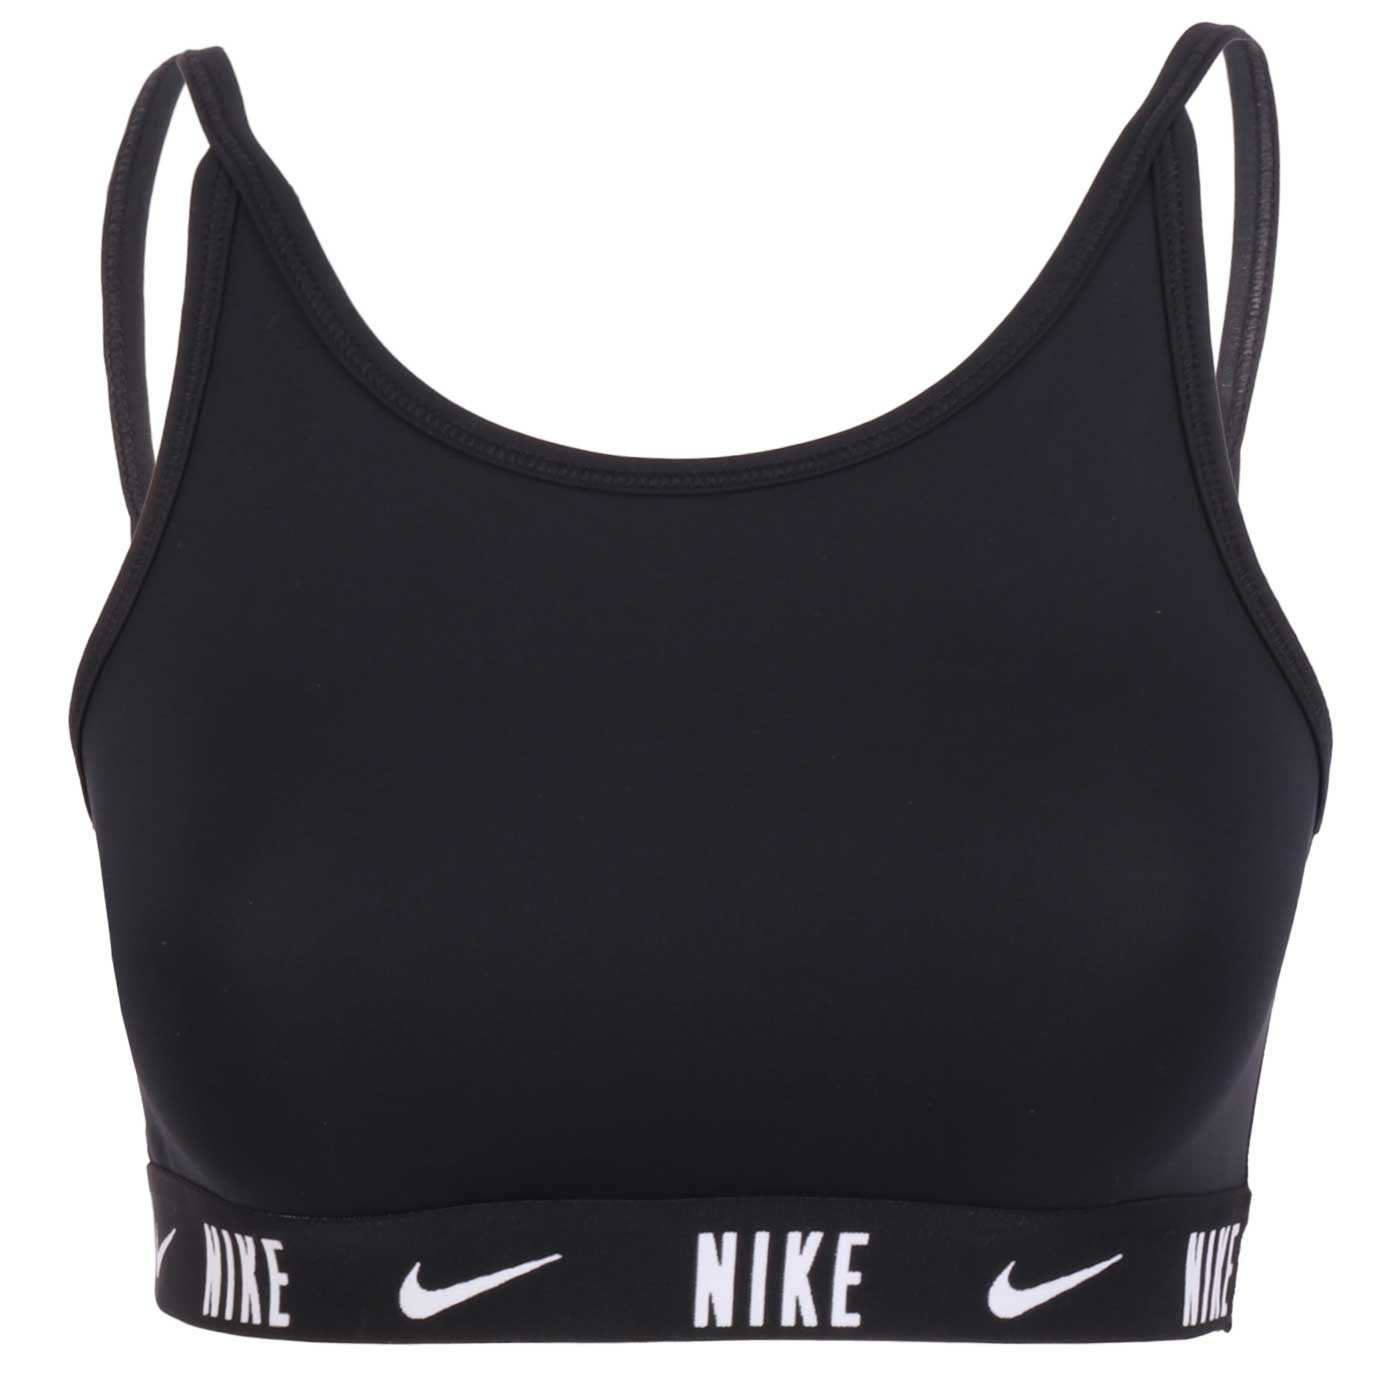 Produktbild von Nike Trophy Sport-BH mit leichter Unterstützung Mädchen - schwarz/schwarz/weiß CU8250-010